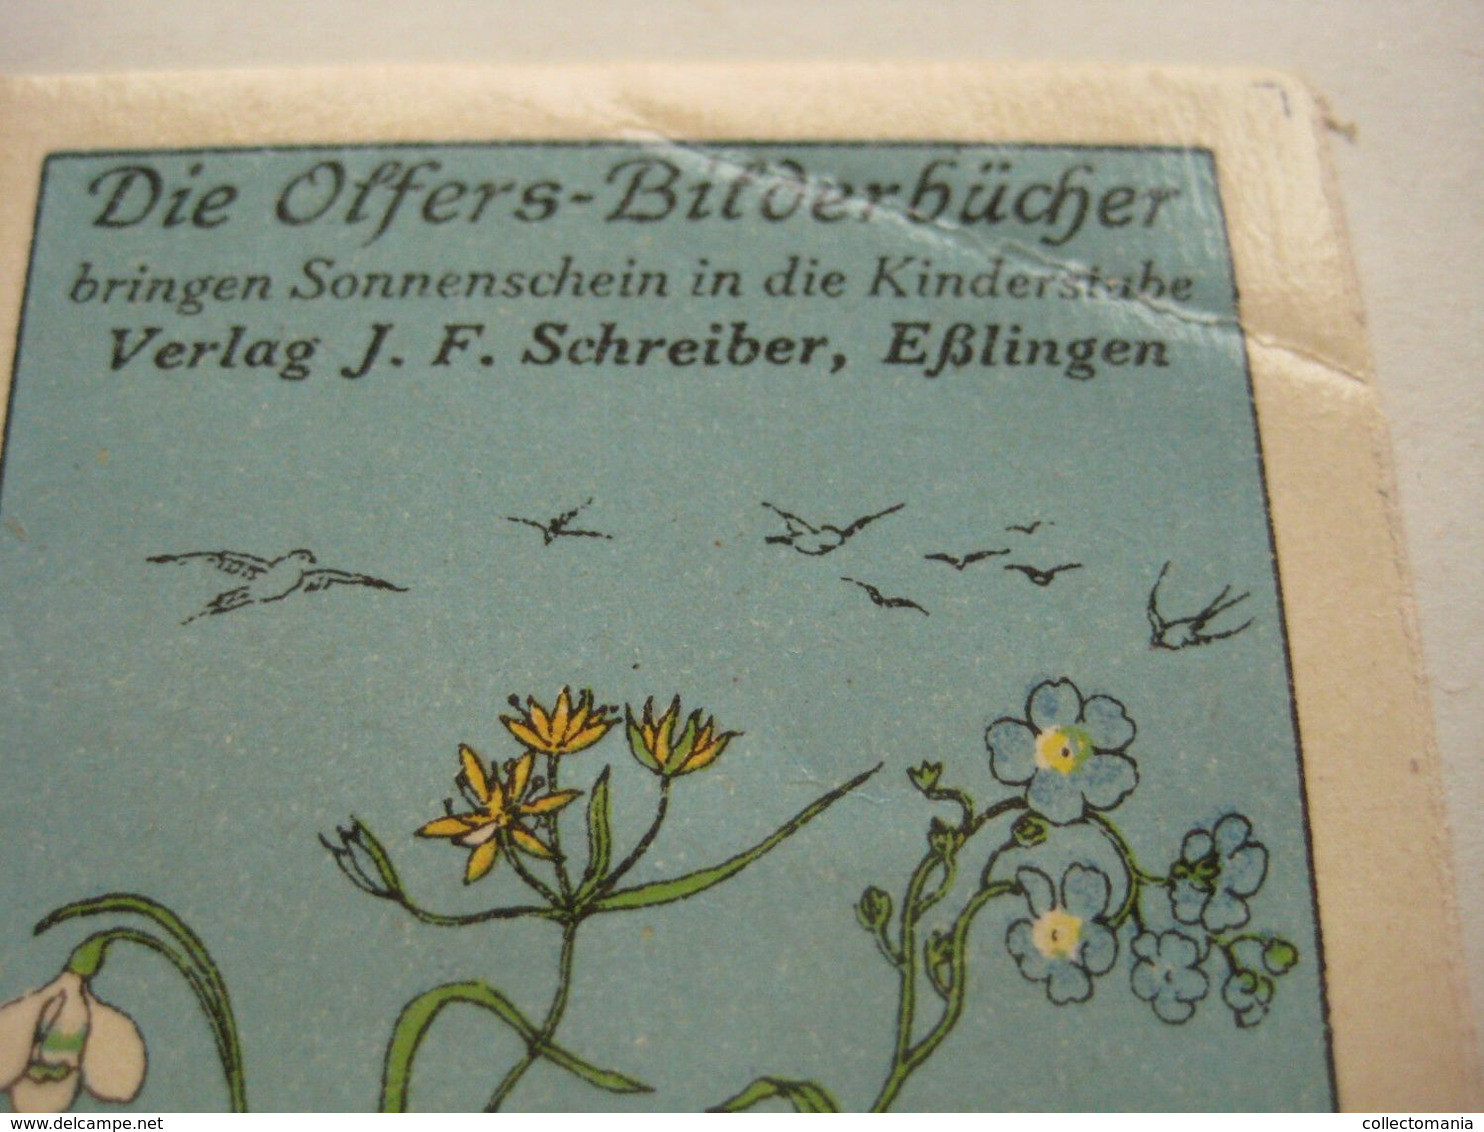 6 POSTER STAMPS Anno1913  Cinderella Advertising Vignettes Art OLFERS BILDERBUCHEN Schreiber In Eslingen ART Books - Picture Book